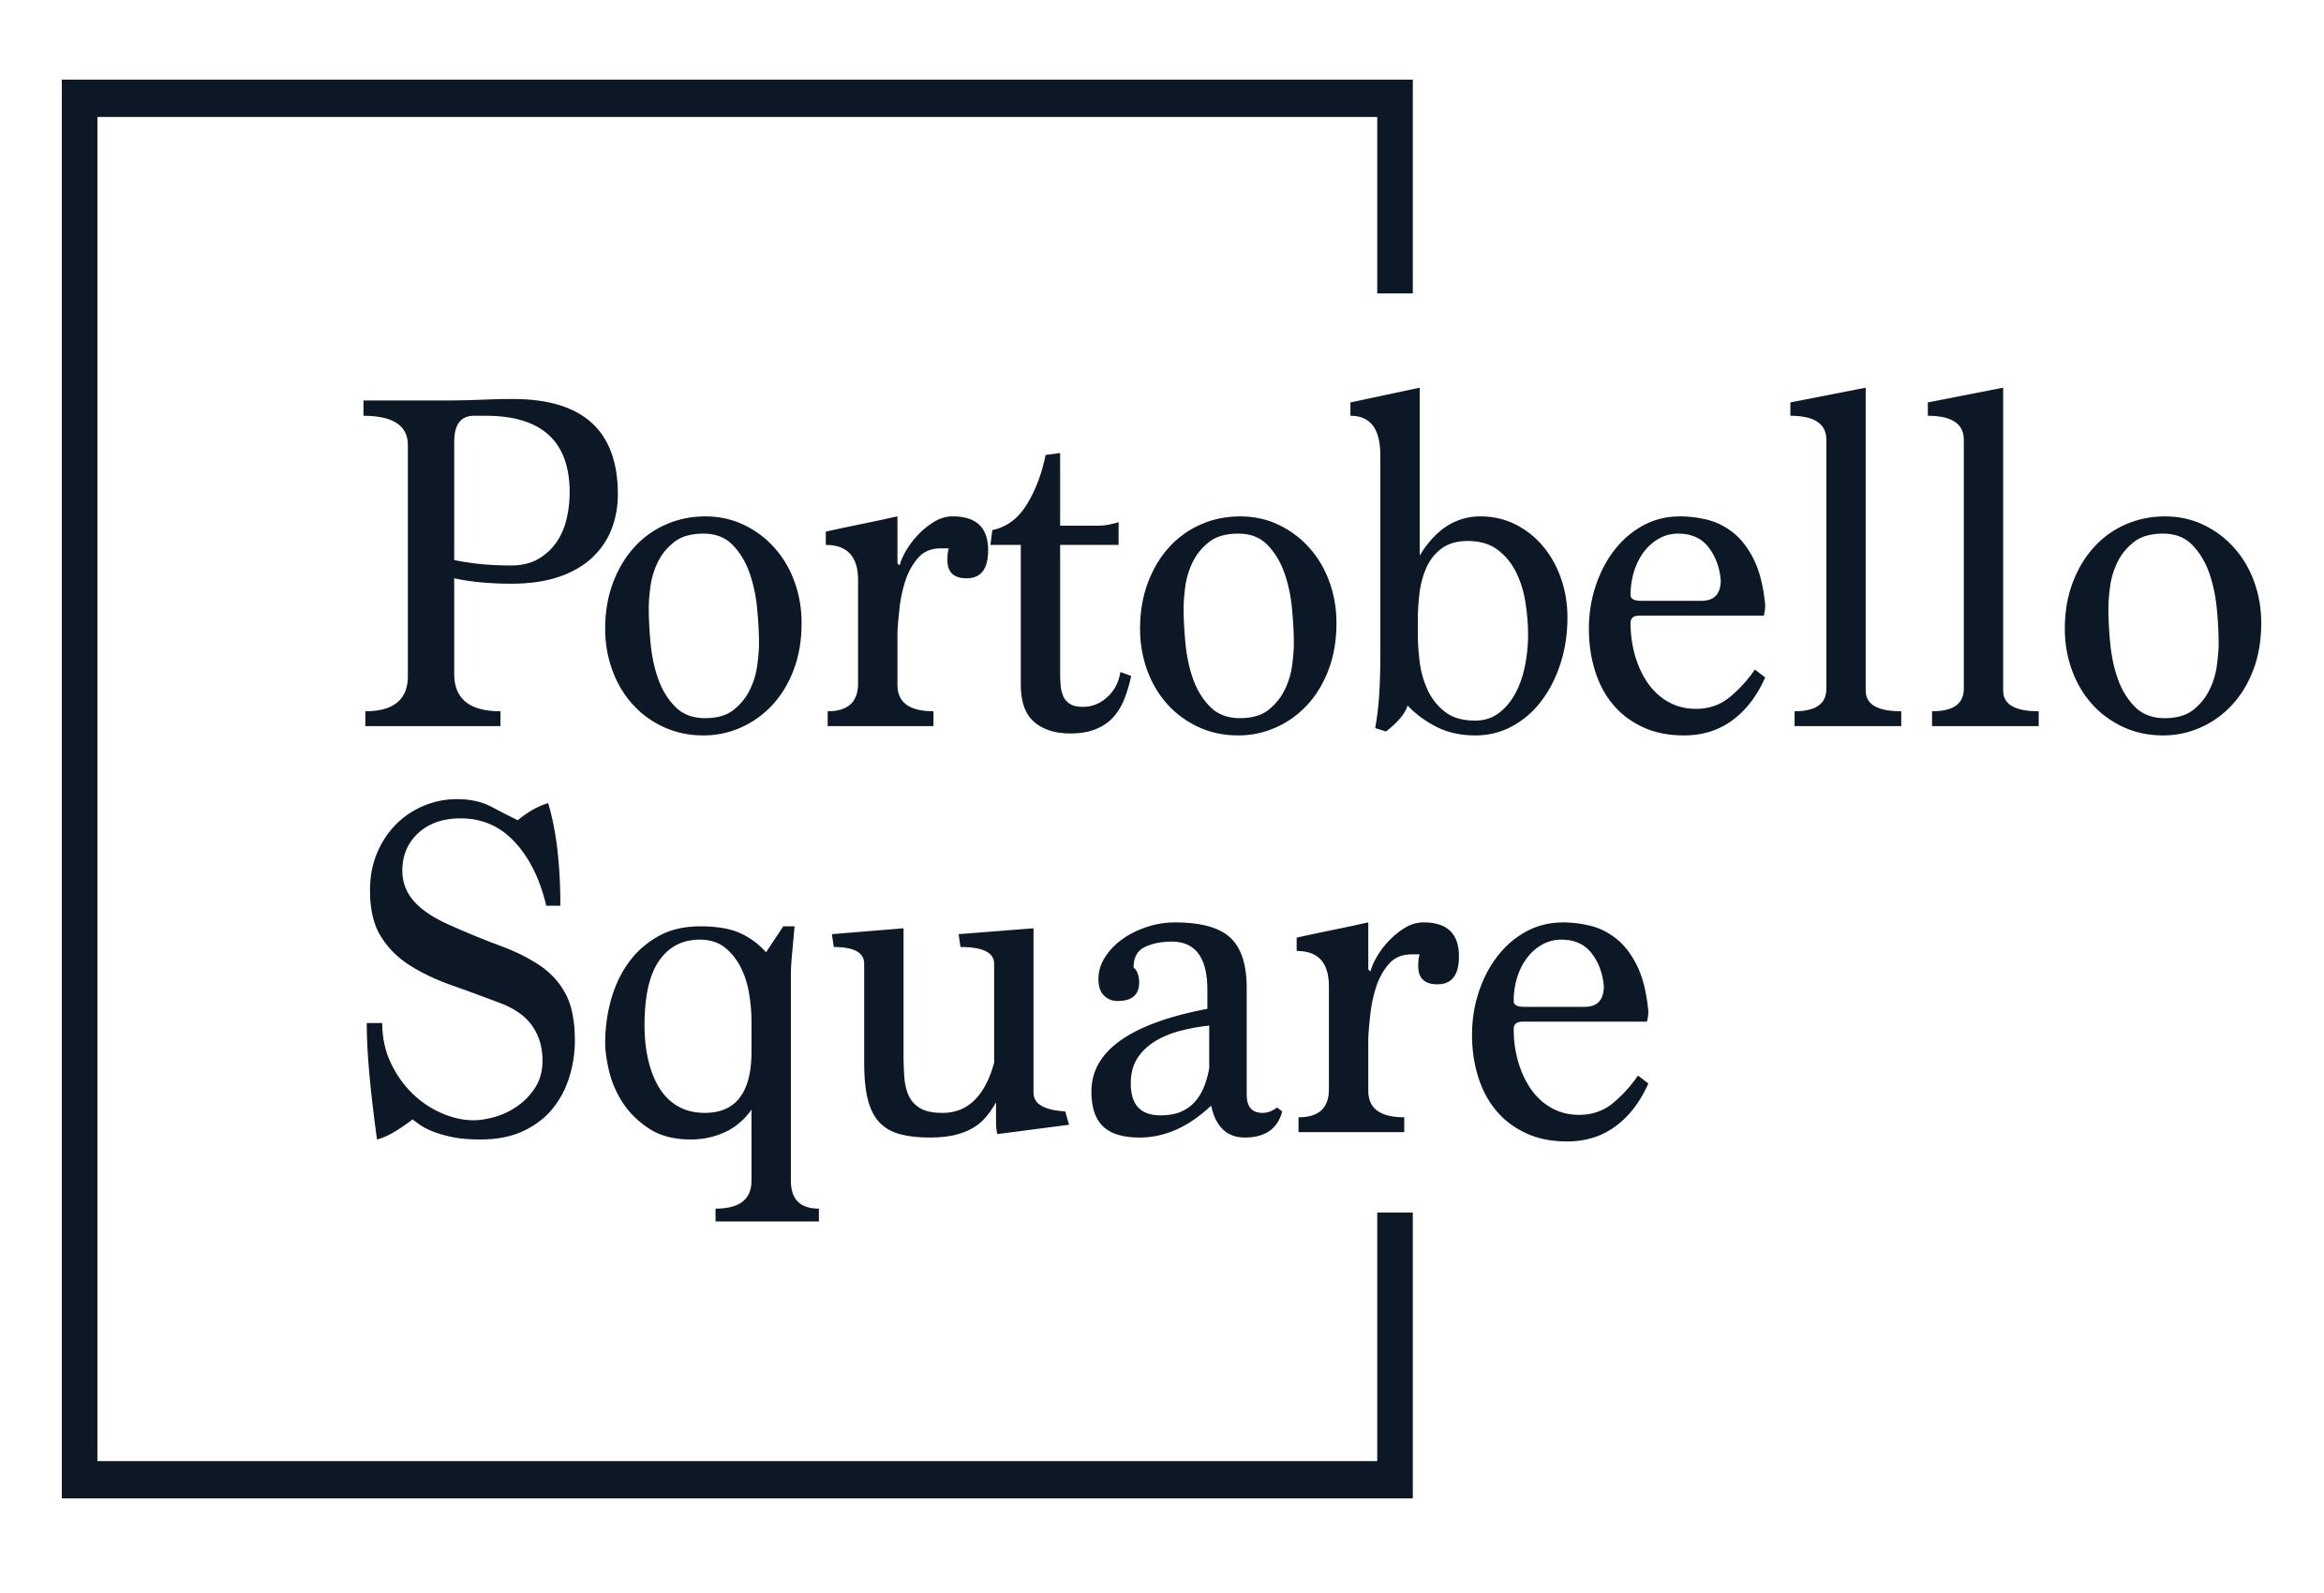 Portobello Square